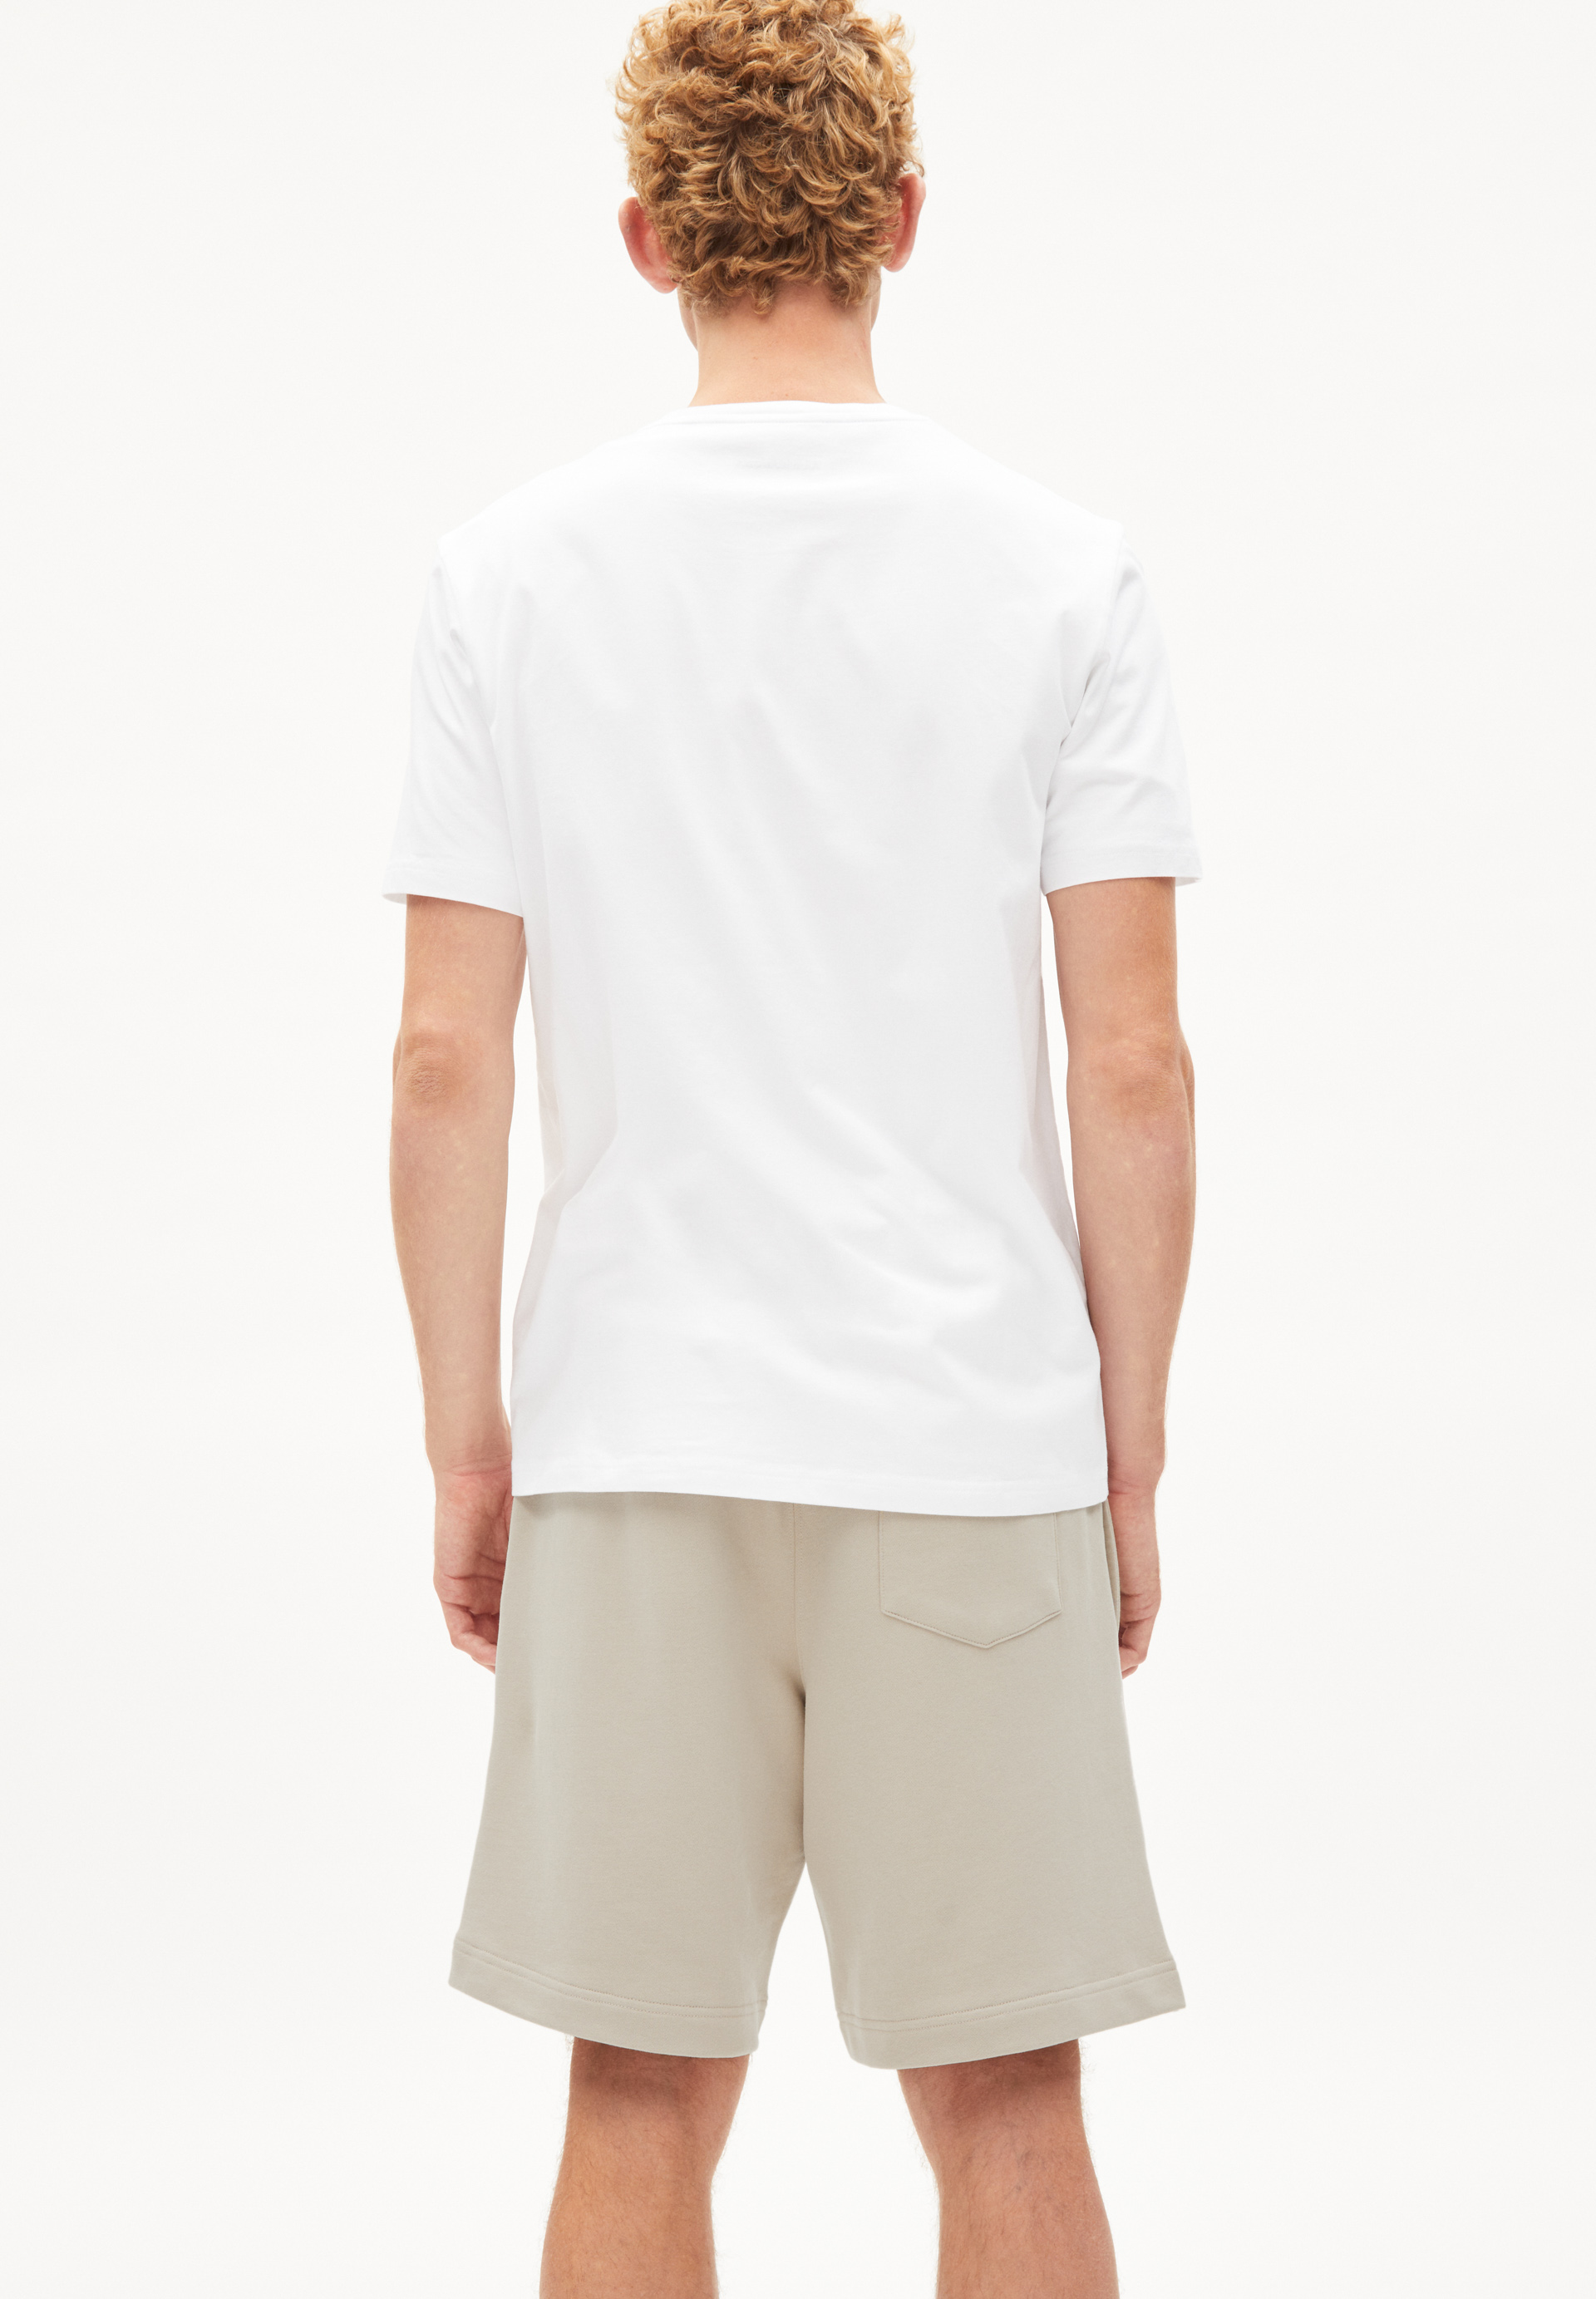 T-Shirt JAAMES BOAT white mit Stickerei